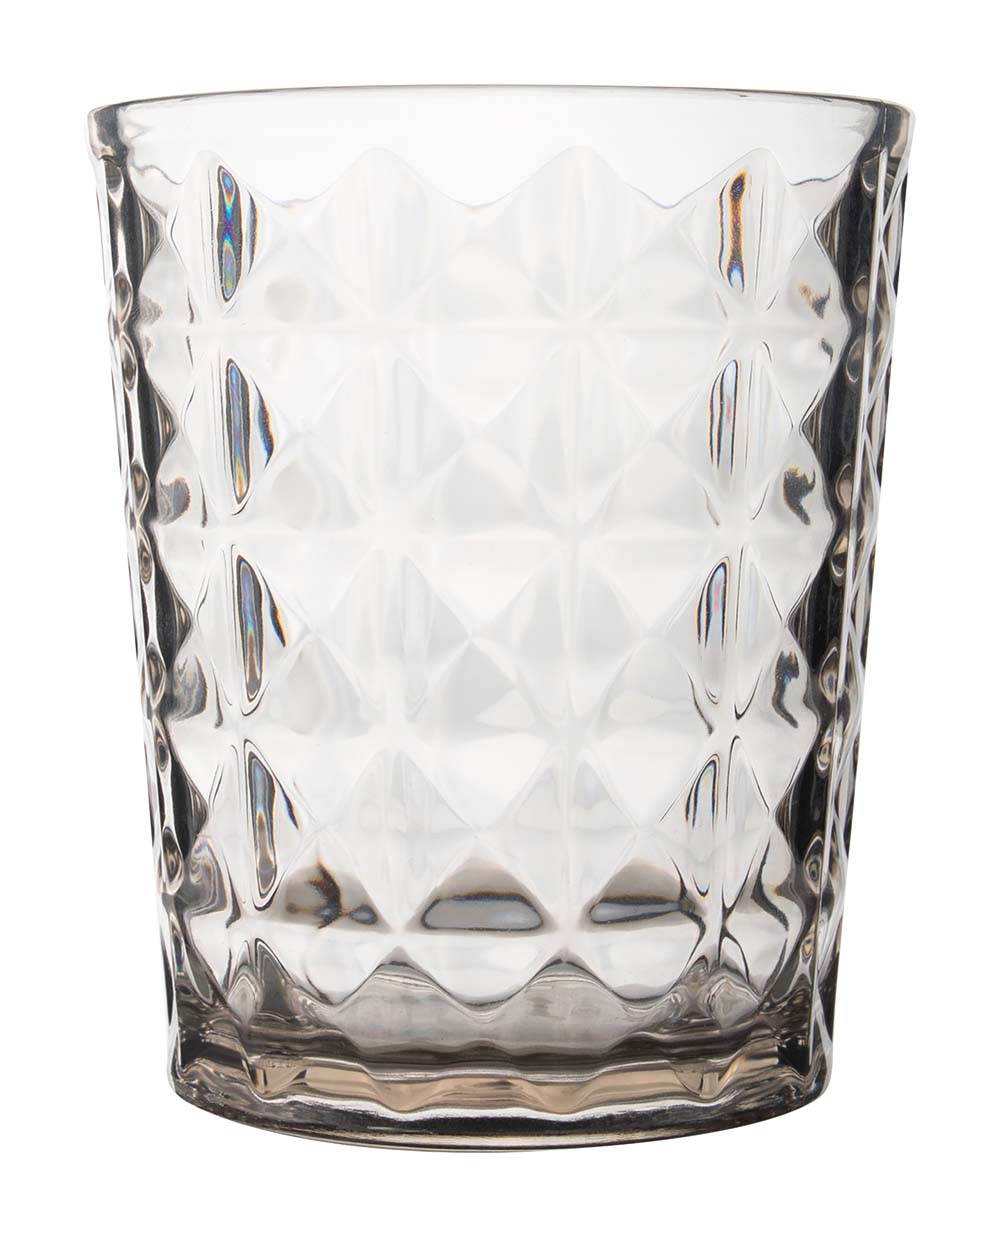 6967964 Een stijlvol zandkleurig waterglas uit de Stone line collectie. Dankzij het stijlvolle steenachtige effect is het waterglas perfect te combineren met de andere items uit de Stone line. Vrijwel onbreekbaar door hoogwaardig SAN materiaal. Zeer gemakkelijk te reinigen en langdurig te gebruiken, wat het glas erg duurzaam maakt. Daarnaast is het waterglas erg lichtgewicht, krasbestendig en BPA vrij. Bestaat uit een set van 2 stuks. Inhoud: 480 ml.